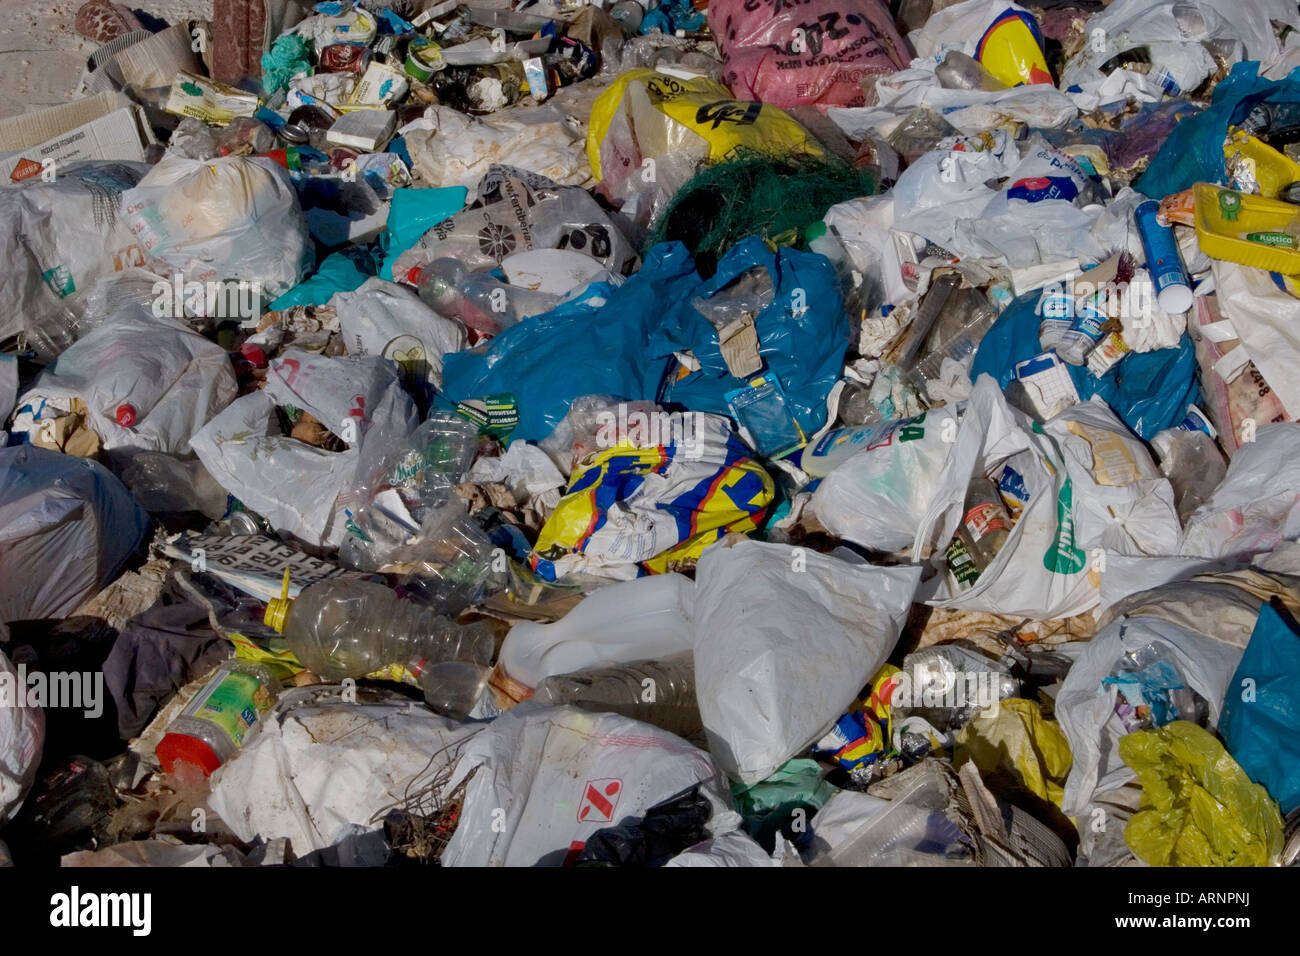 Brutto sito di sacchetti di plastica ladened con rifiuti domestici oggetto di dumping in campagna Foto Stock